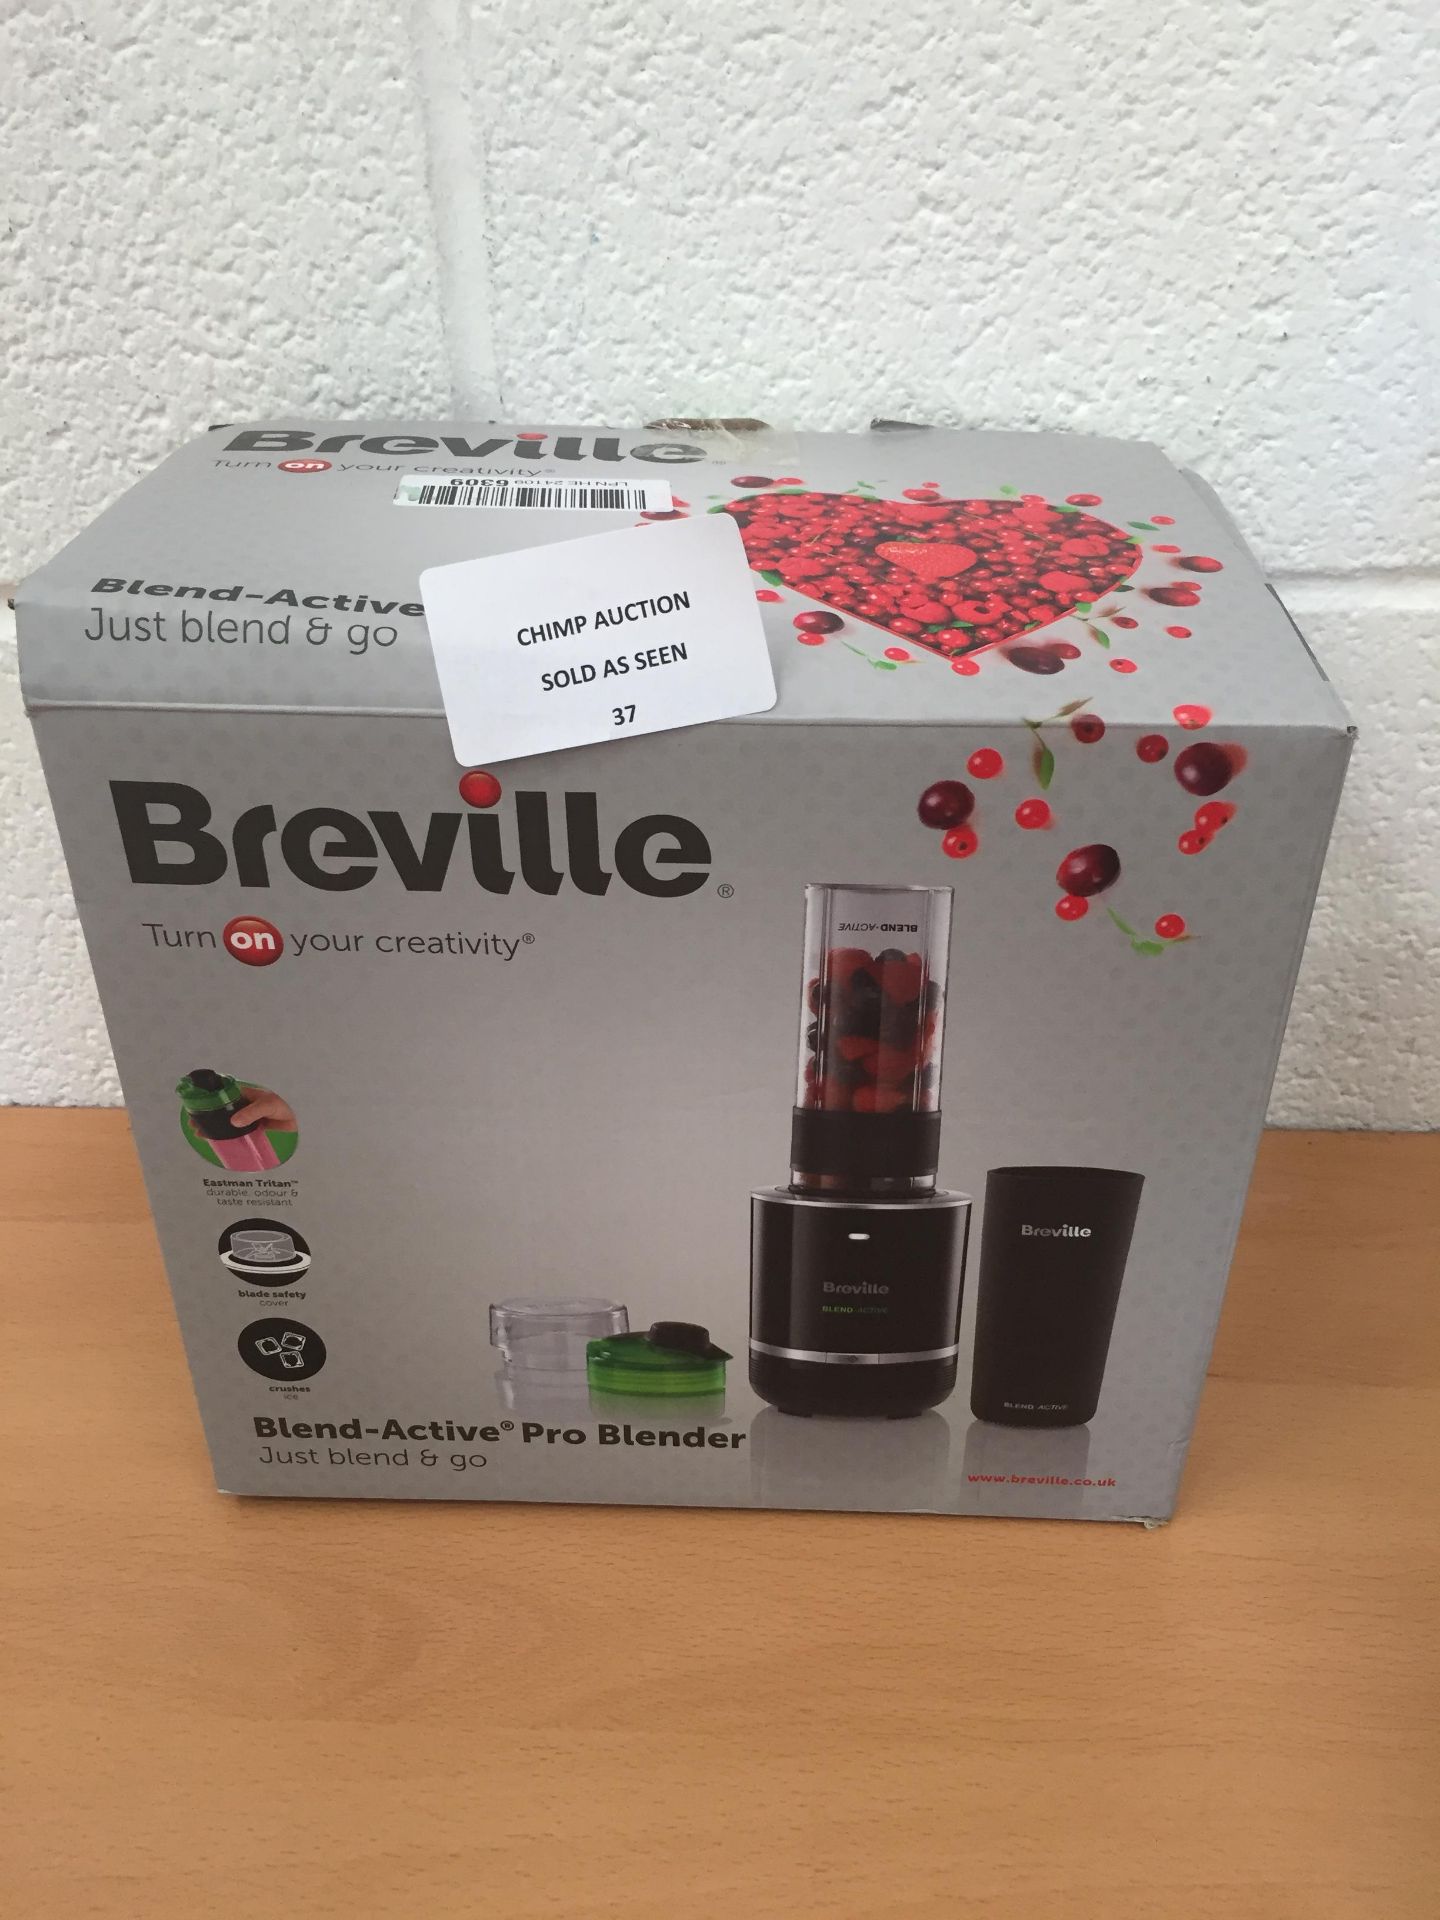 Breville Blend-Active Pro Blender